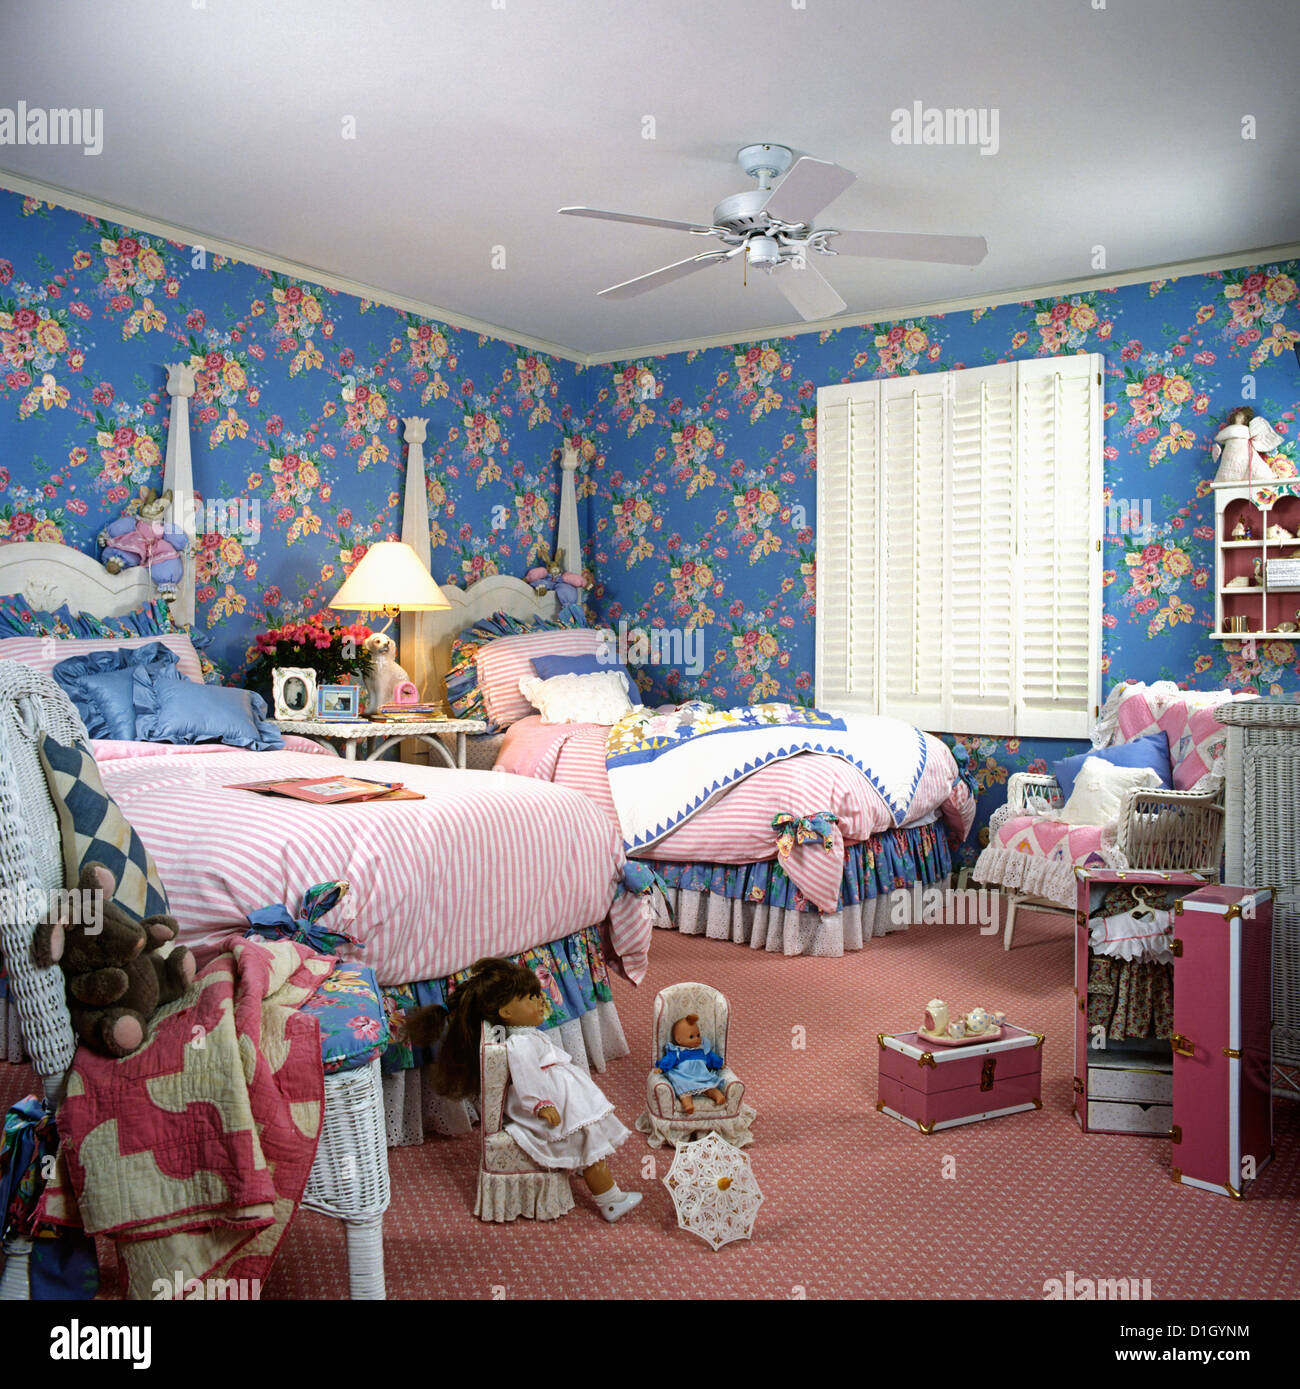 Camera DEI BAMBINI: Ragazza la doppia due letti a baldacchino, blu e rosa pareti floreali. Tappeto rosa. Bianco persiane di legno in corrispondenza della finestra. Bambole. Foto Stock